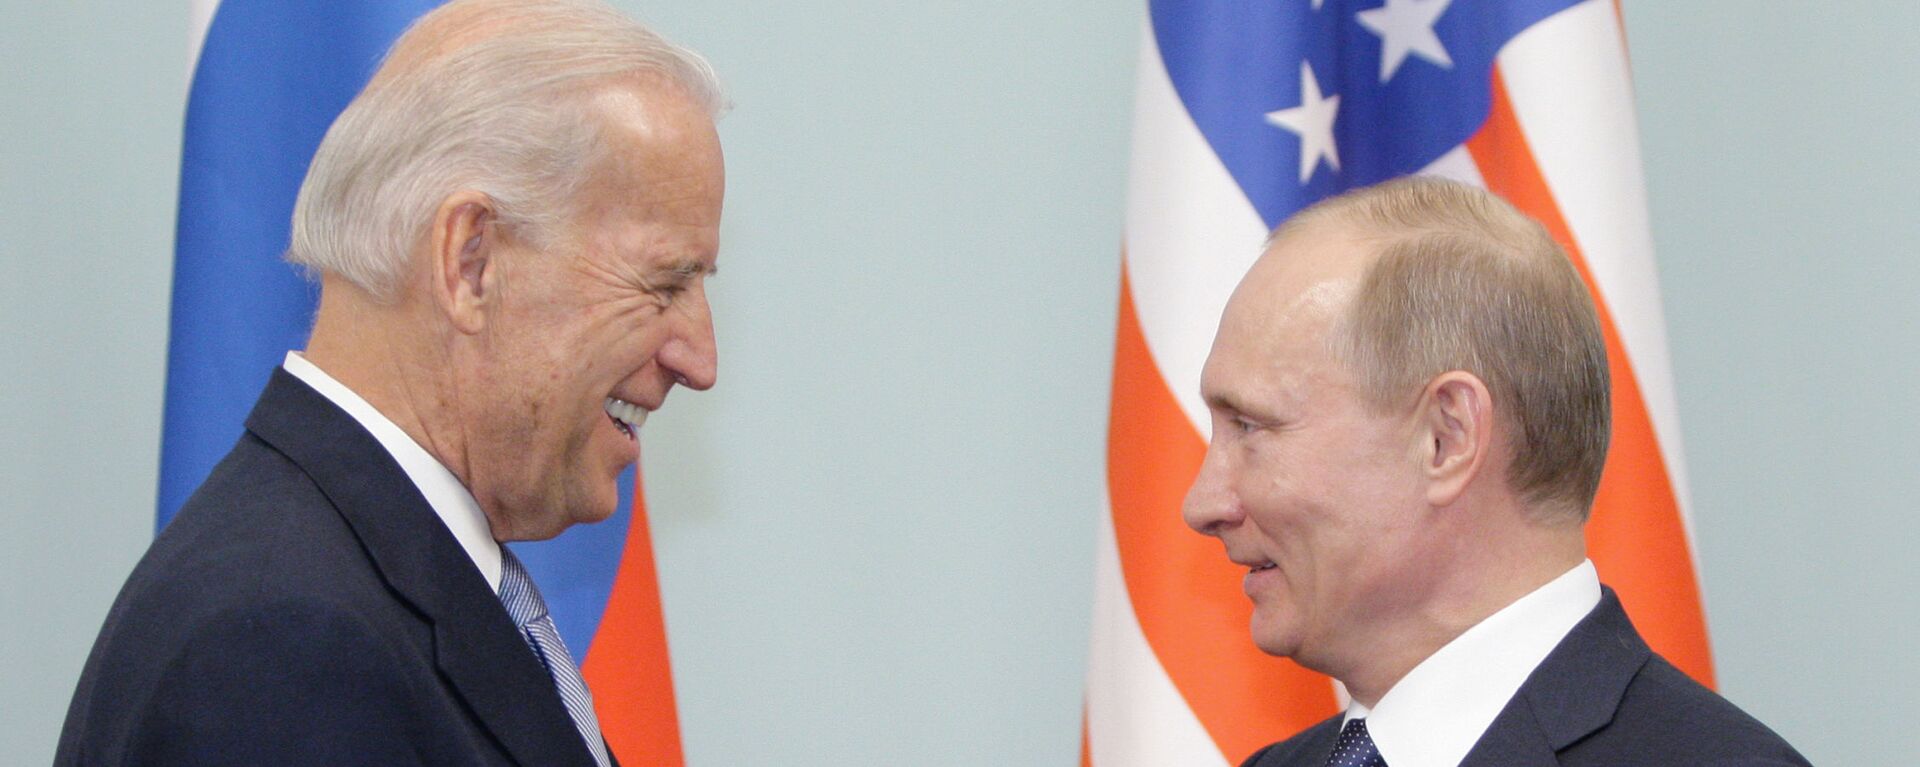 Cuộc gặp giữa thủ tướng Nga Vladimir Putin và phó tổng thống Hoa Kỳ Joe Biden, năm 2011 - Sputnik Việt Nam, 1920, 19.03.2021